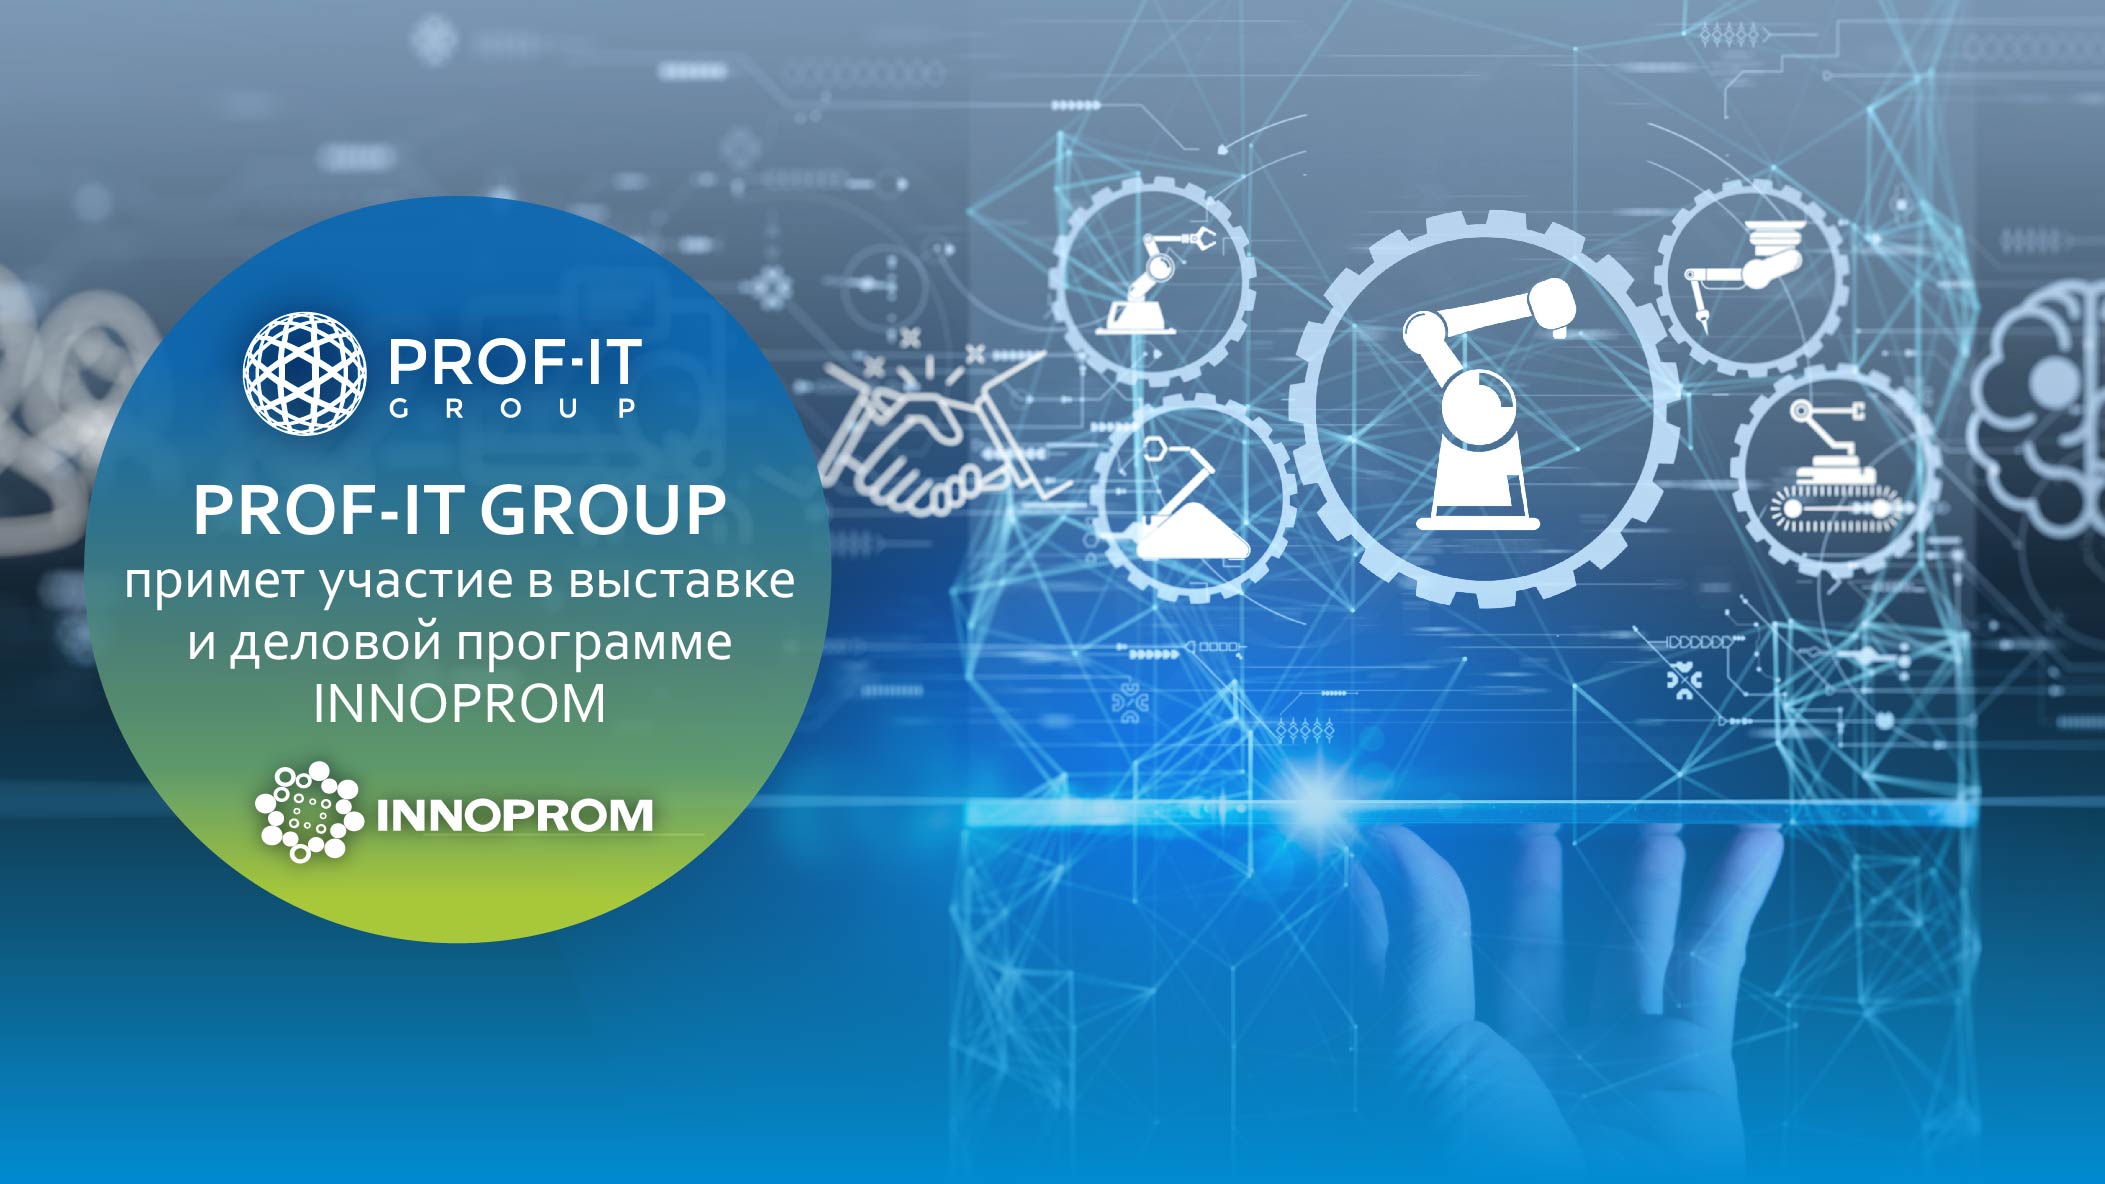 PROF-IT GROUP примет участие в выставке INNOPROM-2021